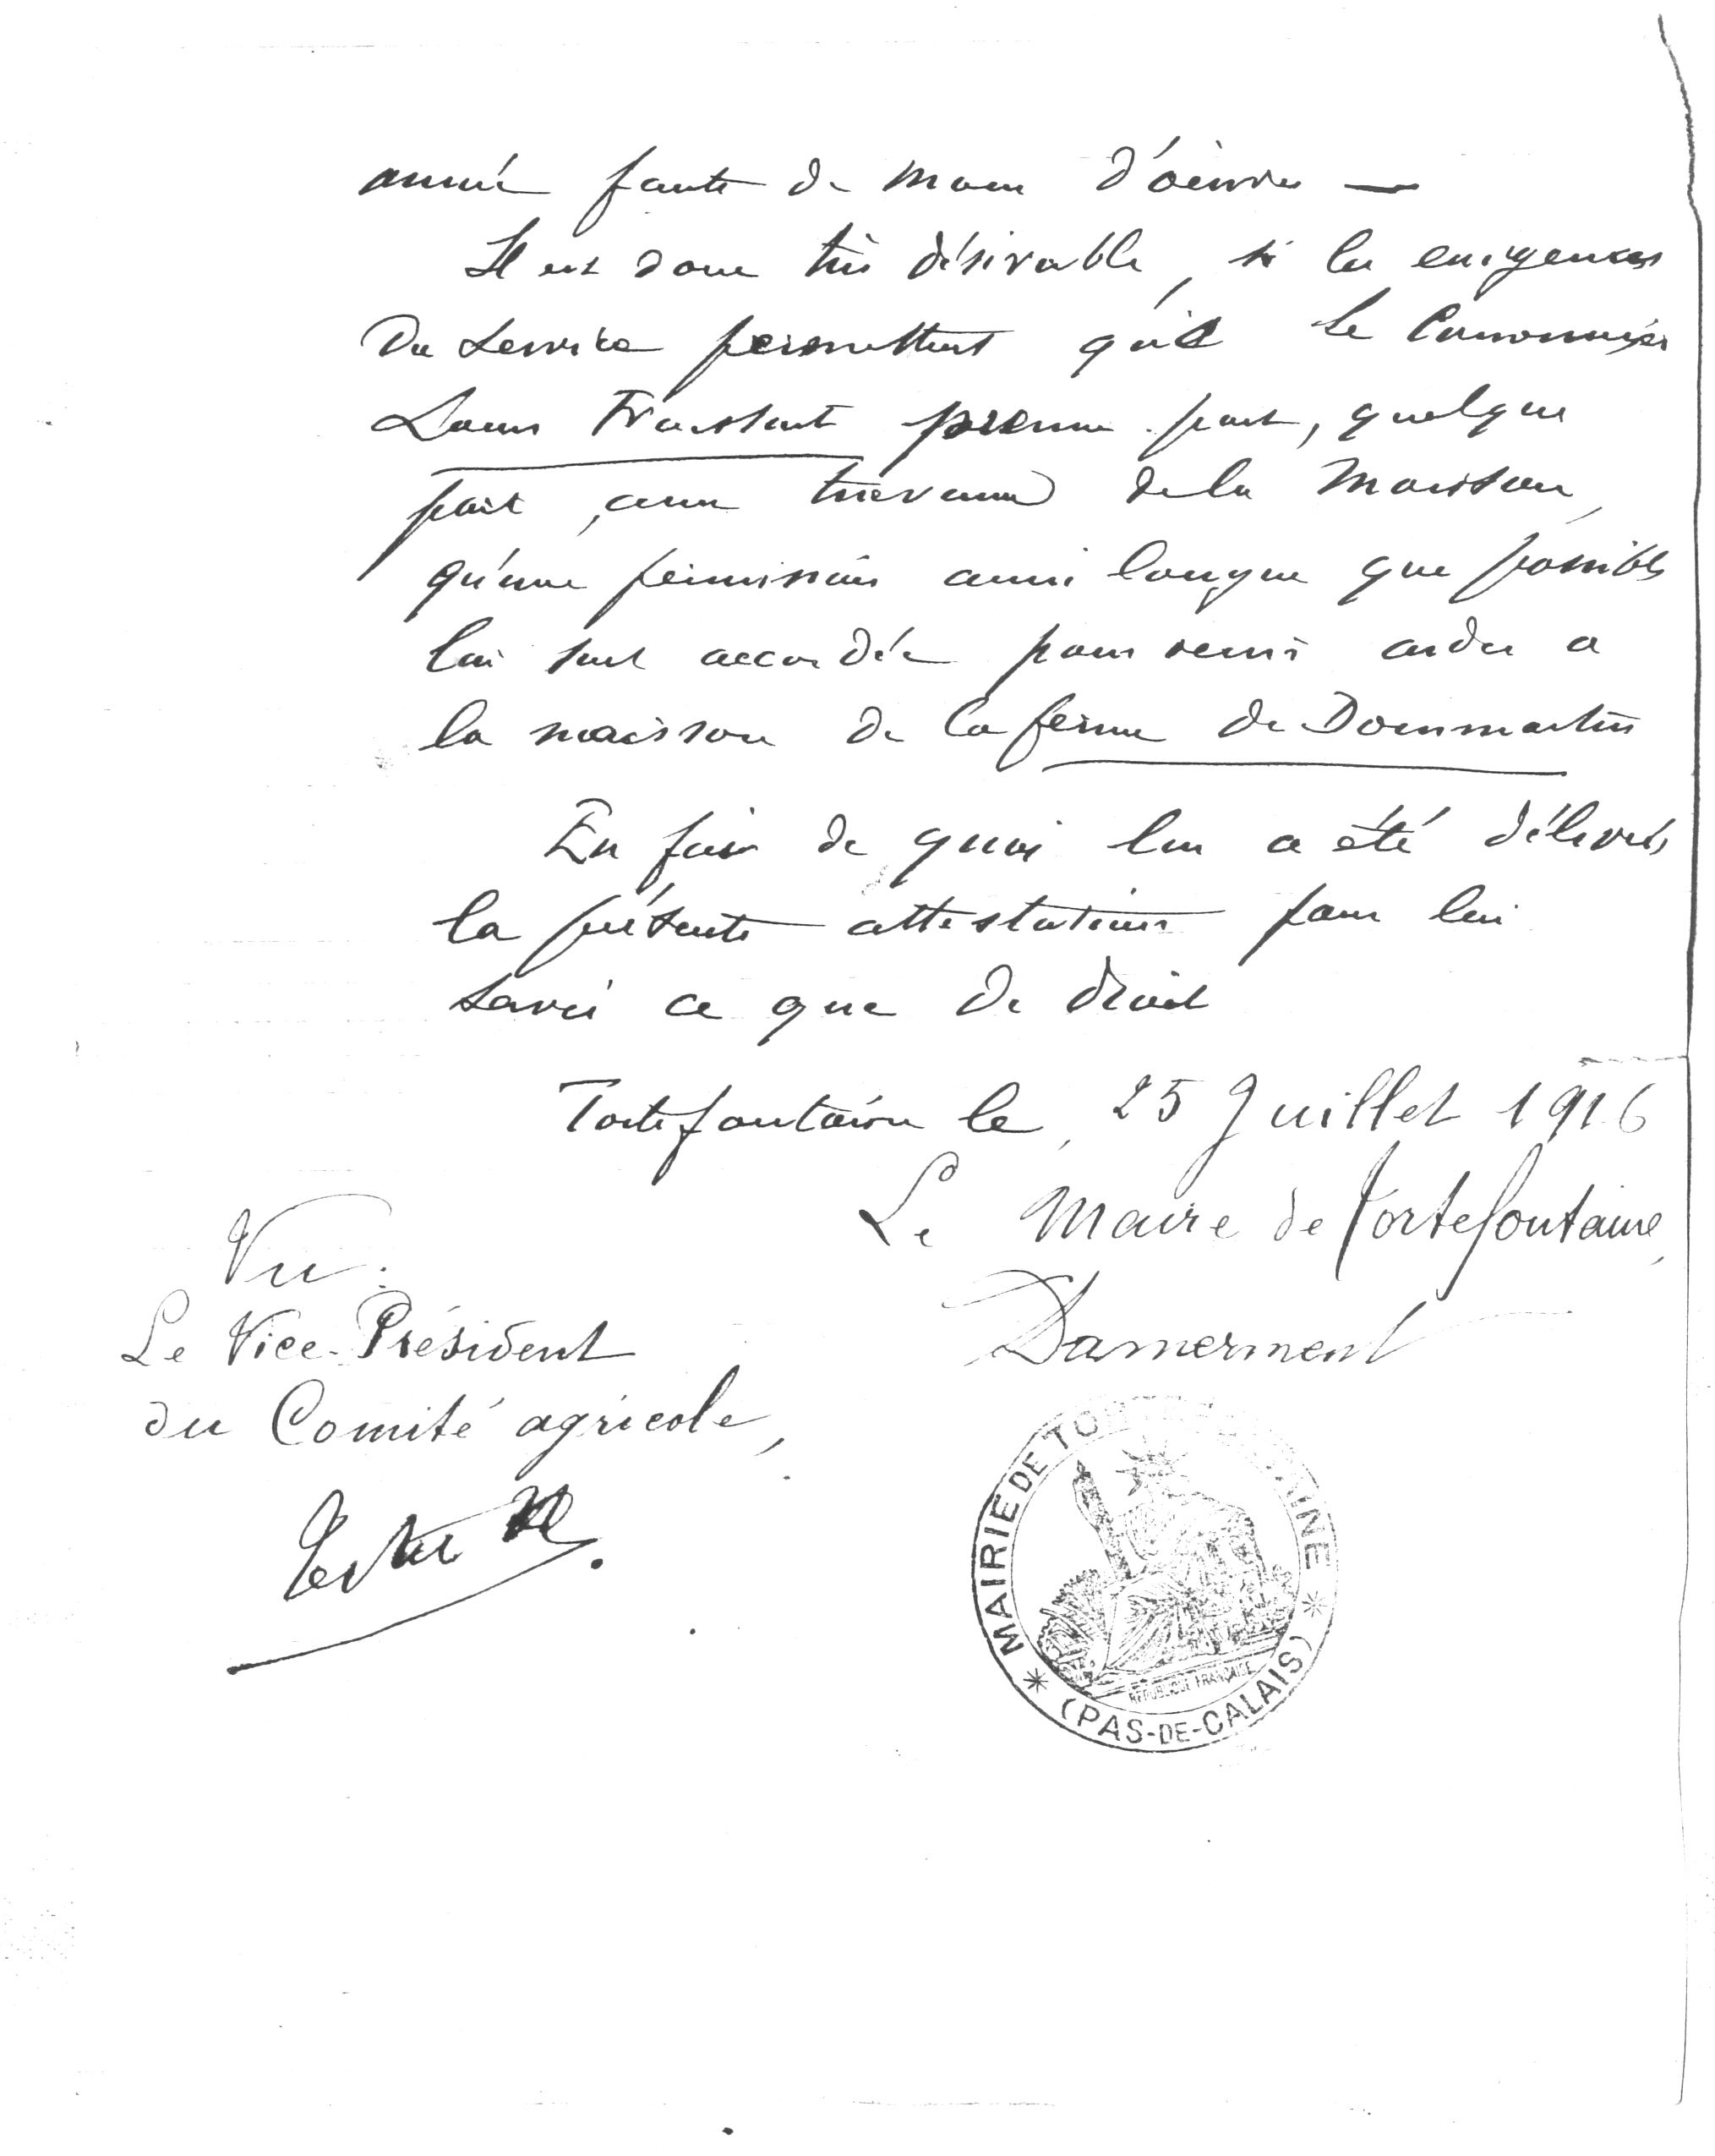 1916 - Demande de permission agricole pour Louis Froissart